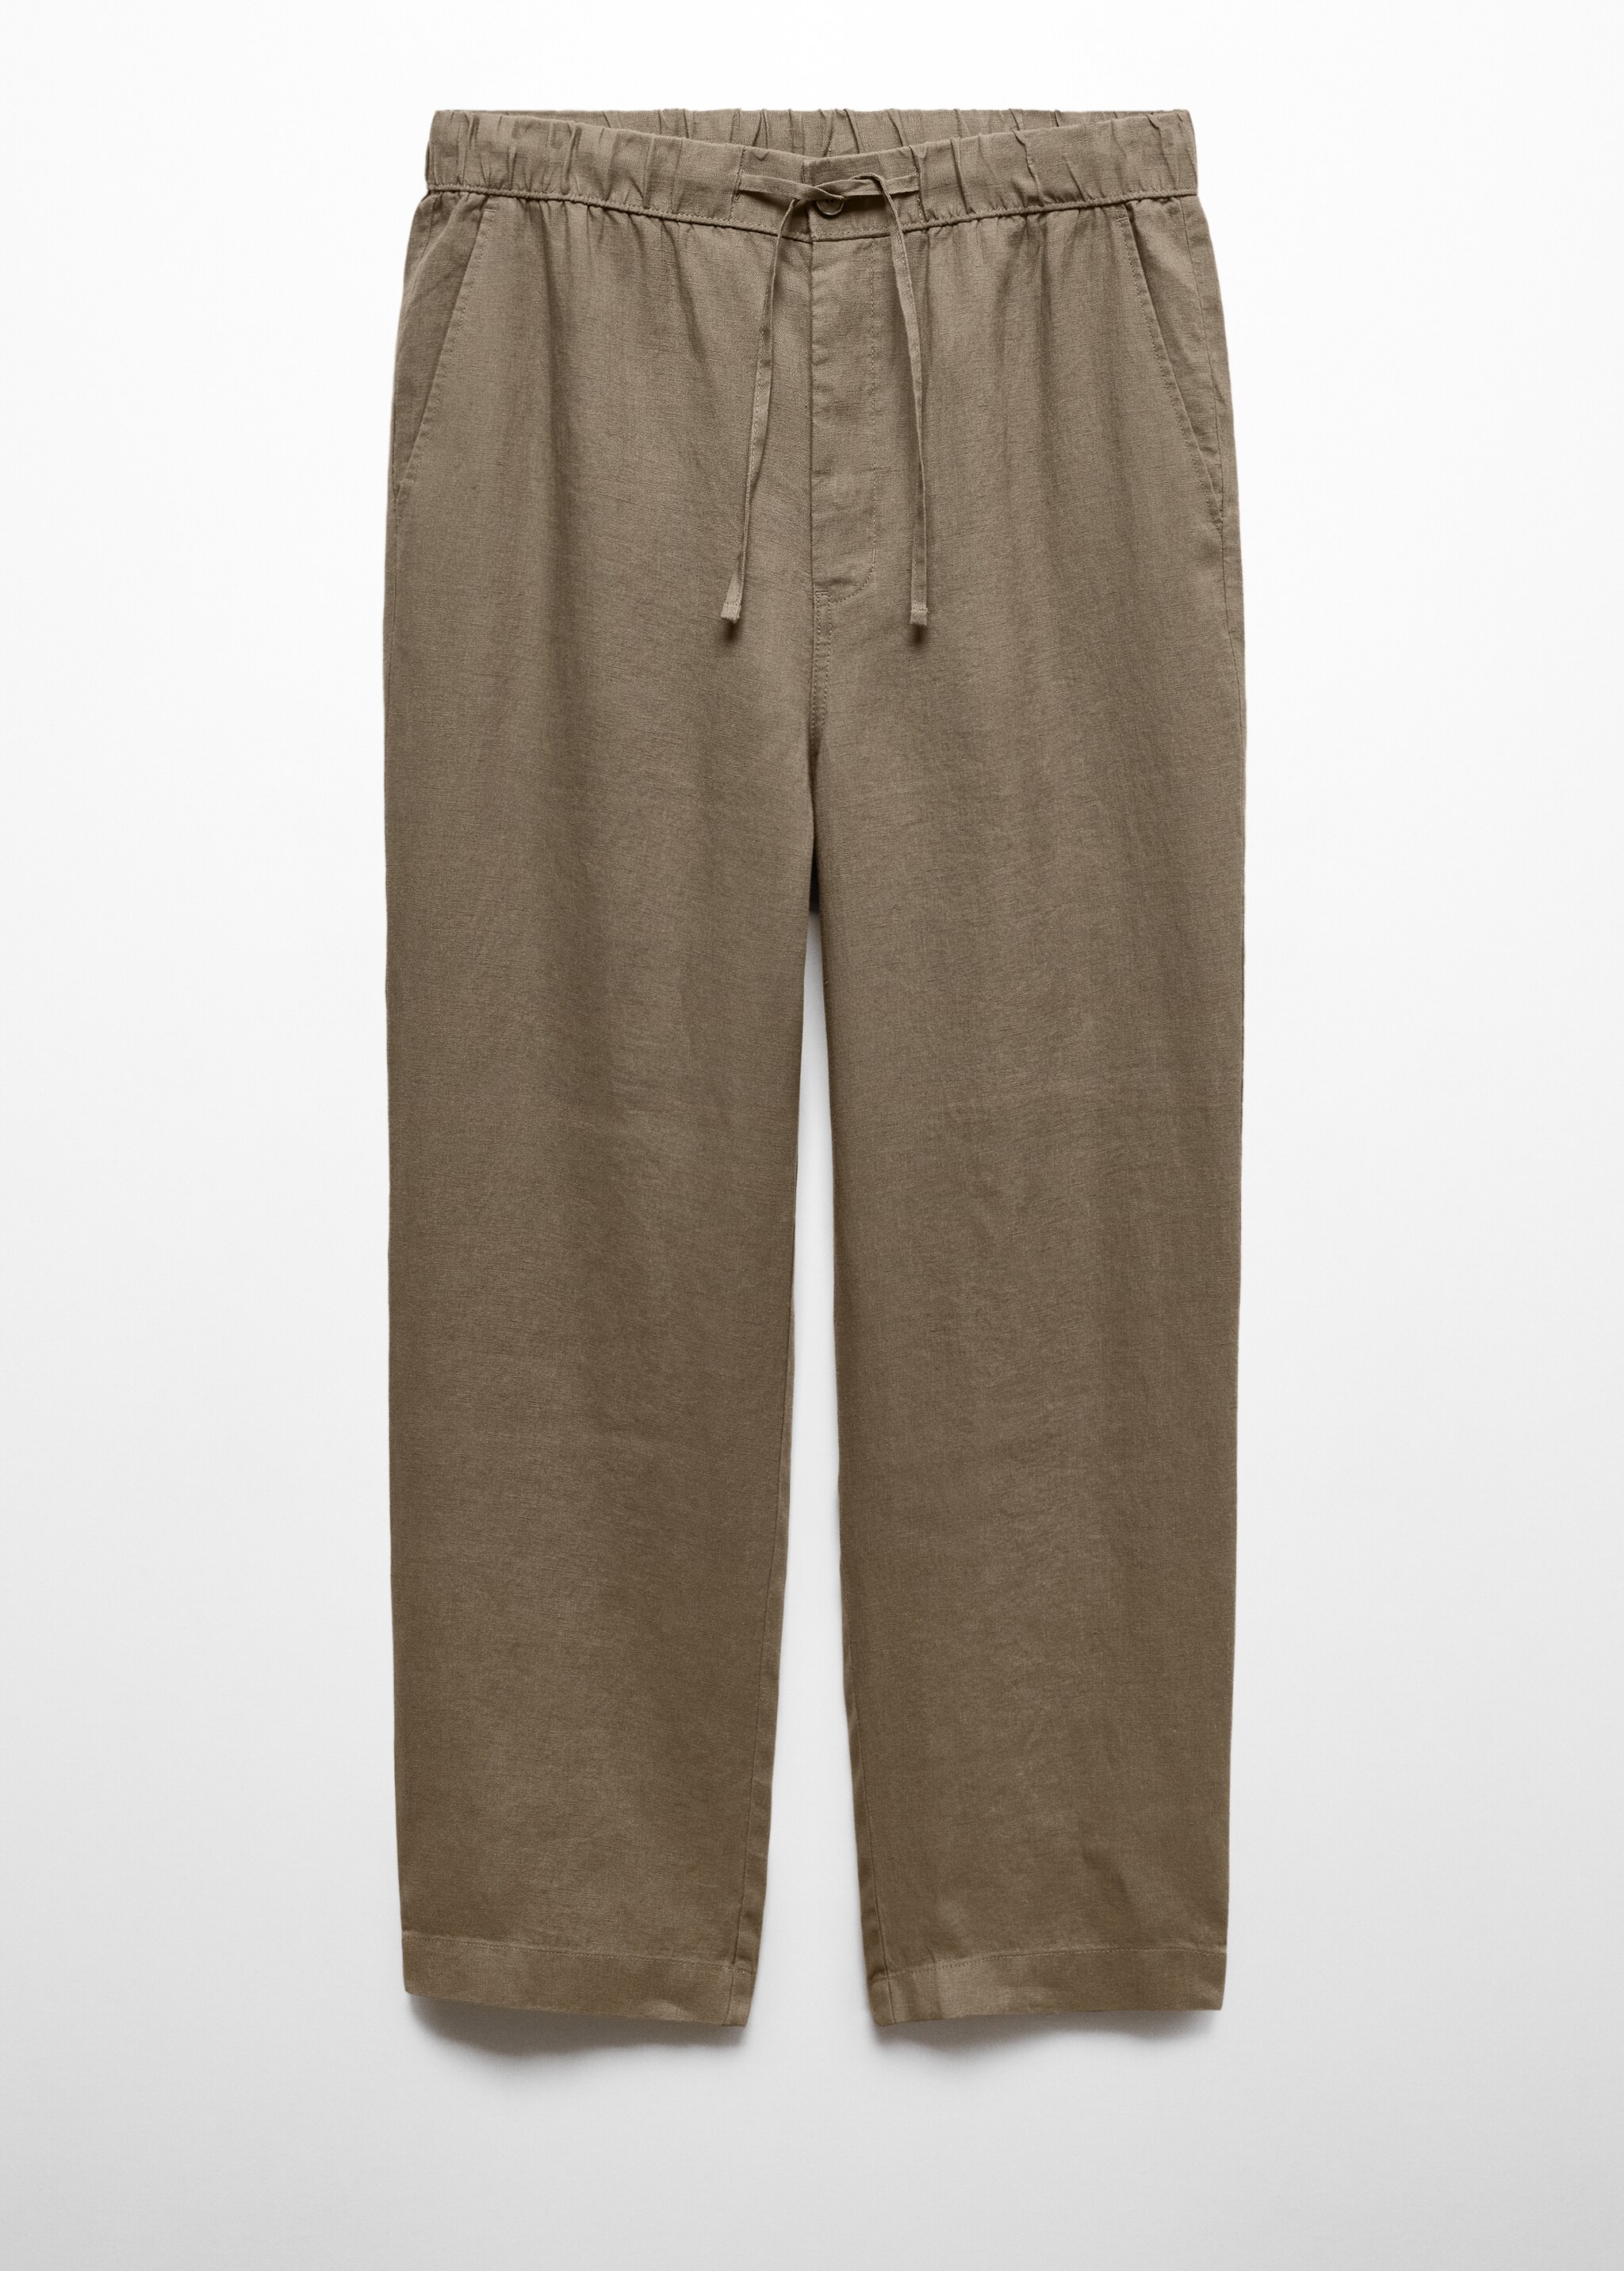 Pantalon 100 % lin cordon - Article sans modèle